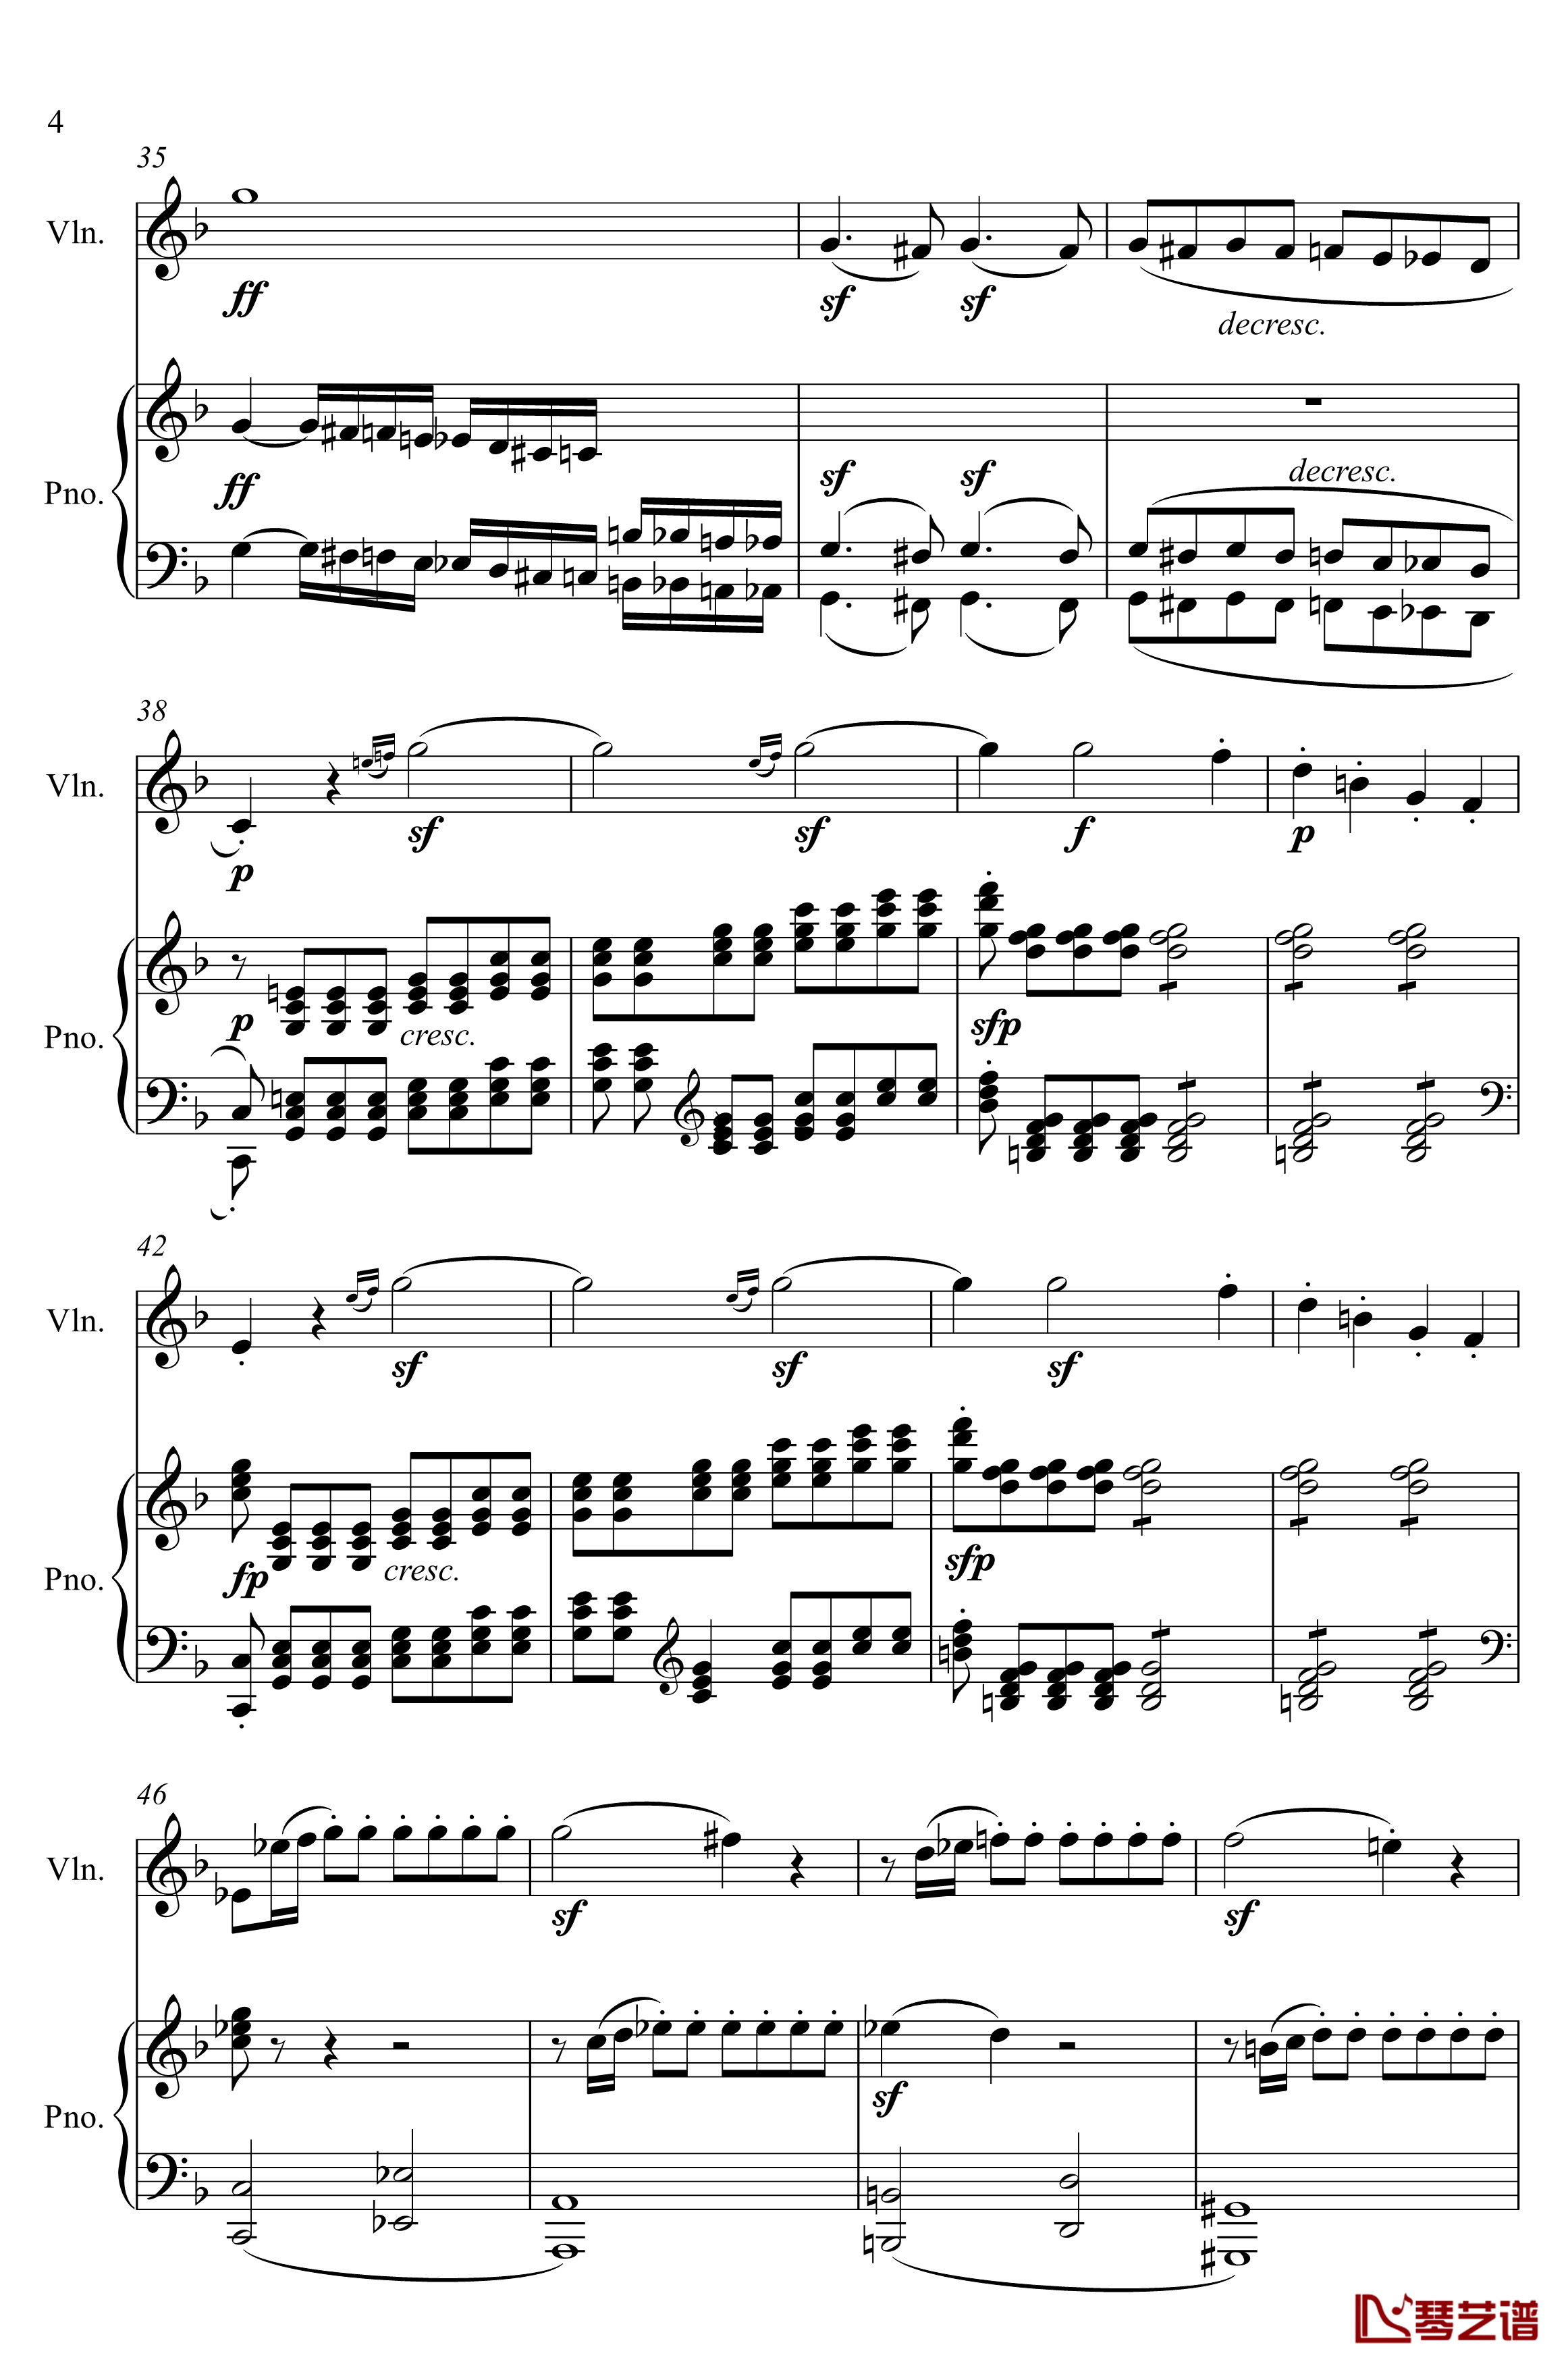 第5小提琴与钢琴奏鸣曲钢琴谱-第一乐章钢琴谱-贝多芬-beethoven4